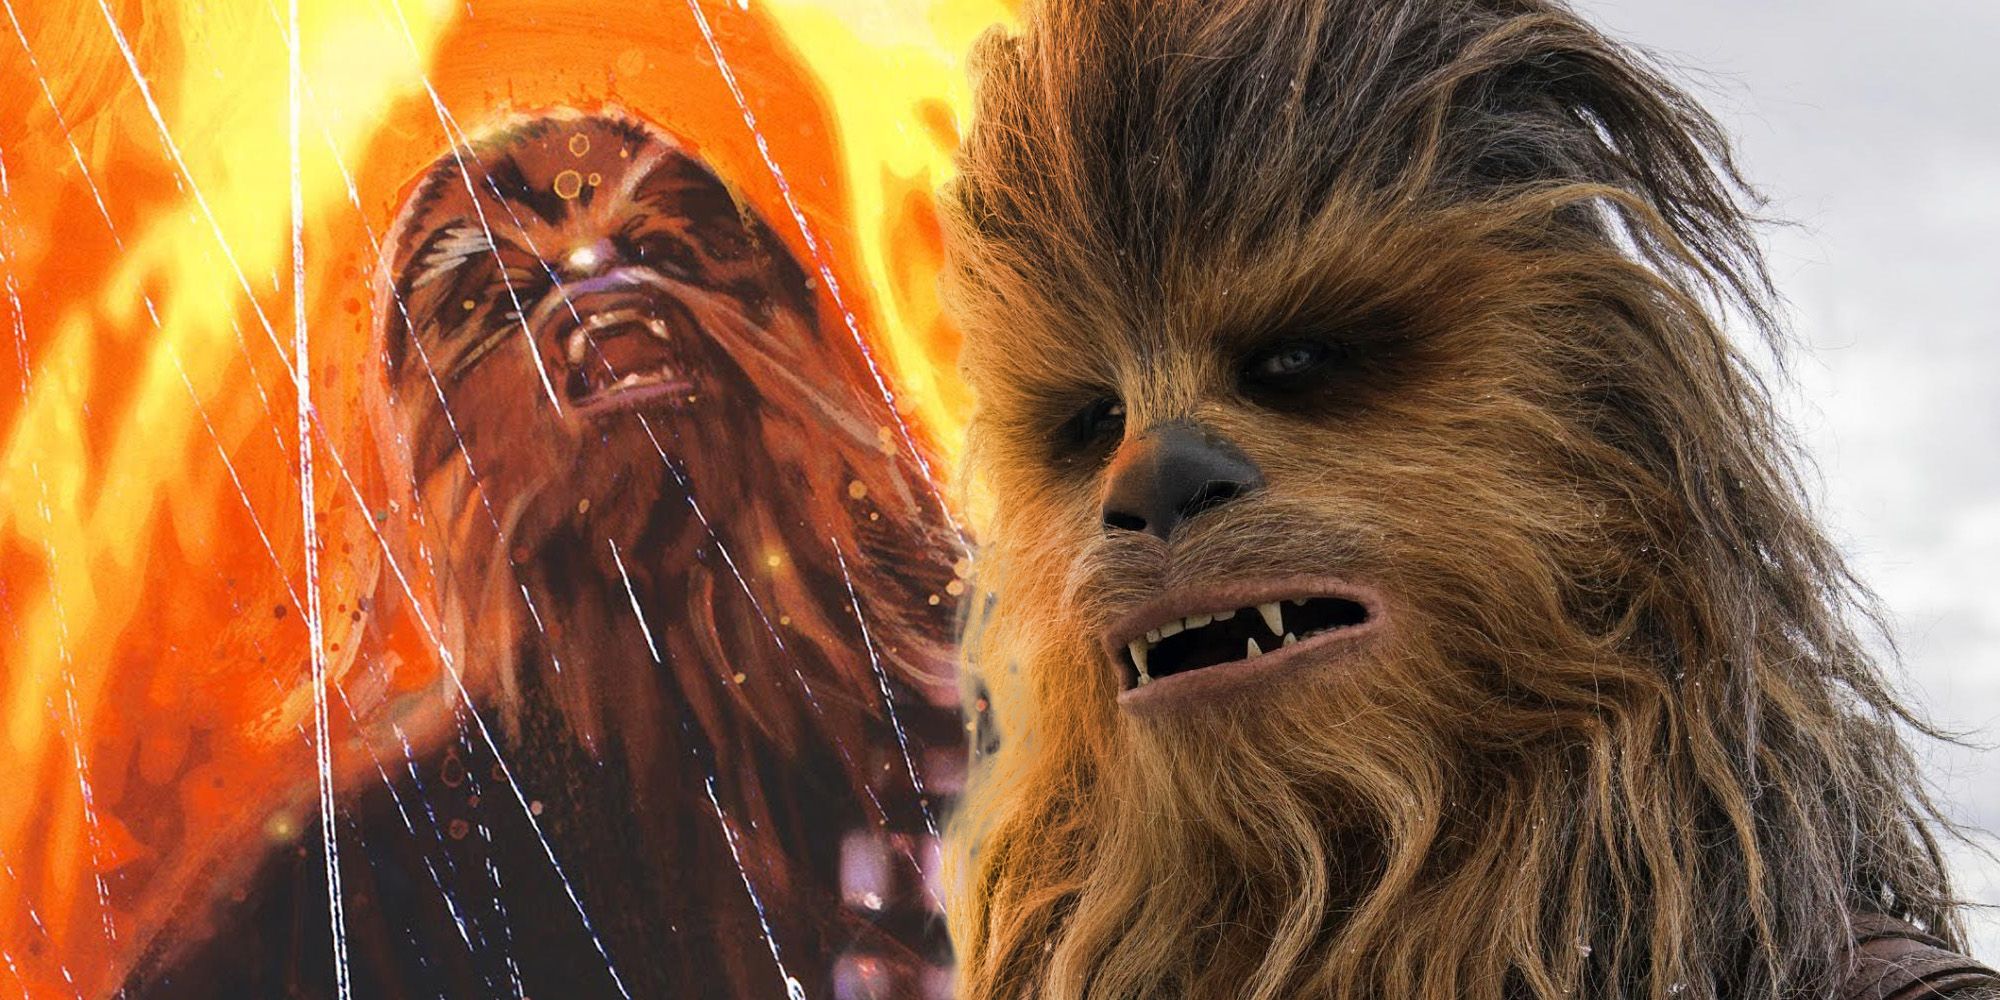 La muerte de Chewbacca demuestra que las leyendas entendieron a Luke mejor de lo que piensan los fanáticos